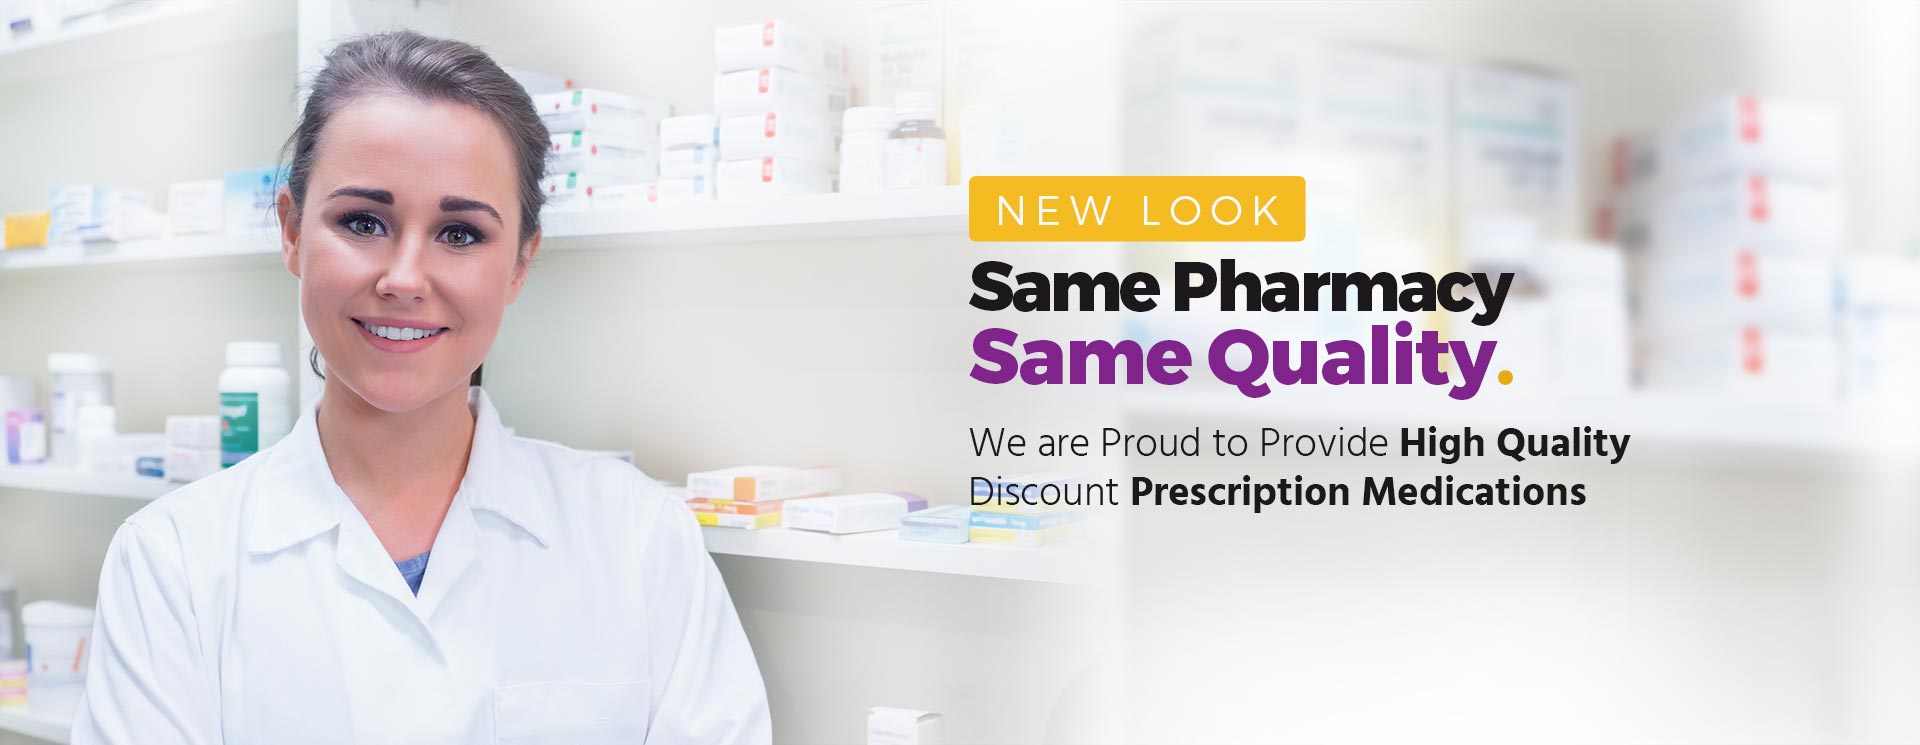 Online pharmacy store